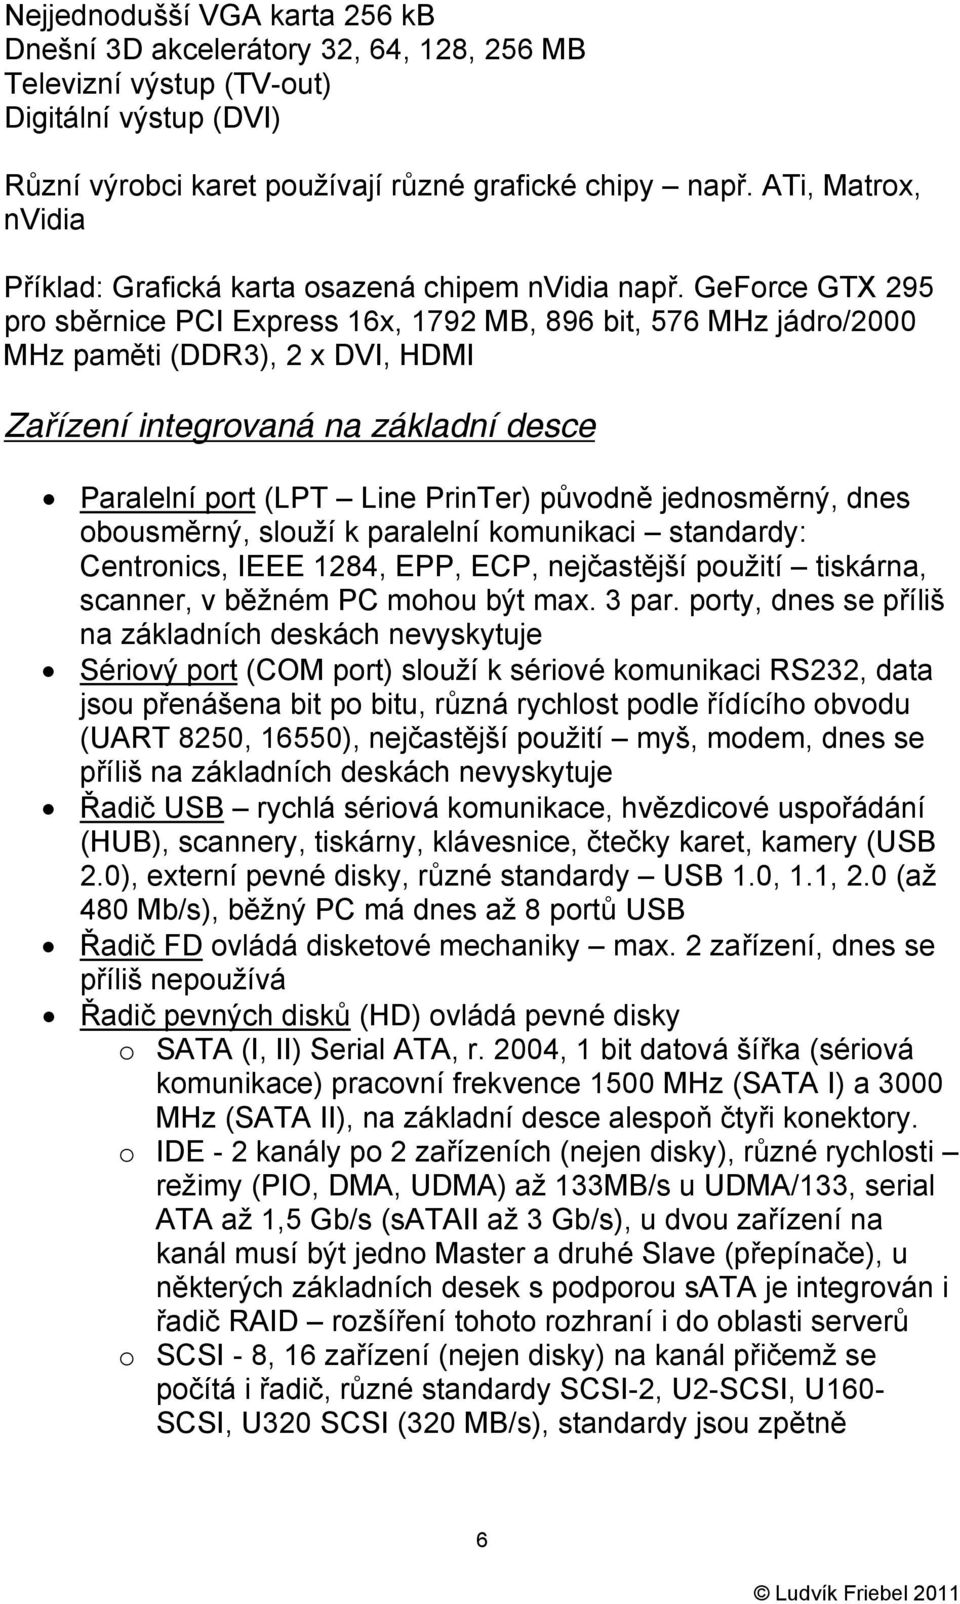 GeForce GTX 295 pro sběrnice PCI Express 16x, 1792 MB, 896 bit, 576 MHz jádro/2000 MHz paměti (DDR3), 2 x DVI, HDMI Zařízení integrovaná na základní desce Paralelní port (LPT Line PrinTer) původně